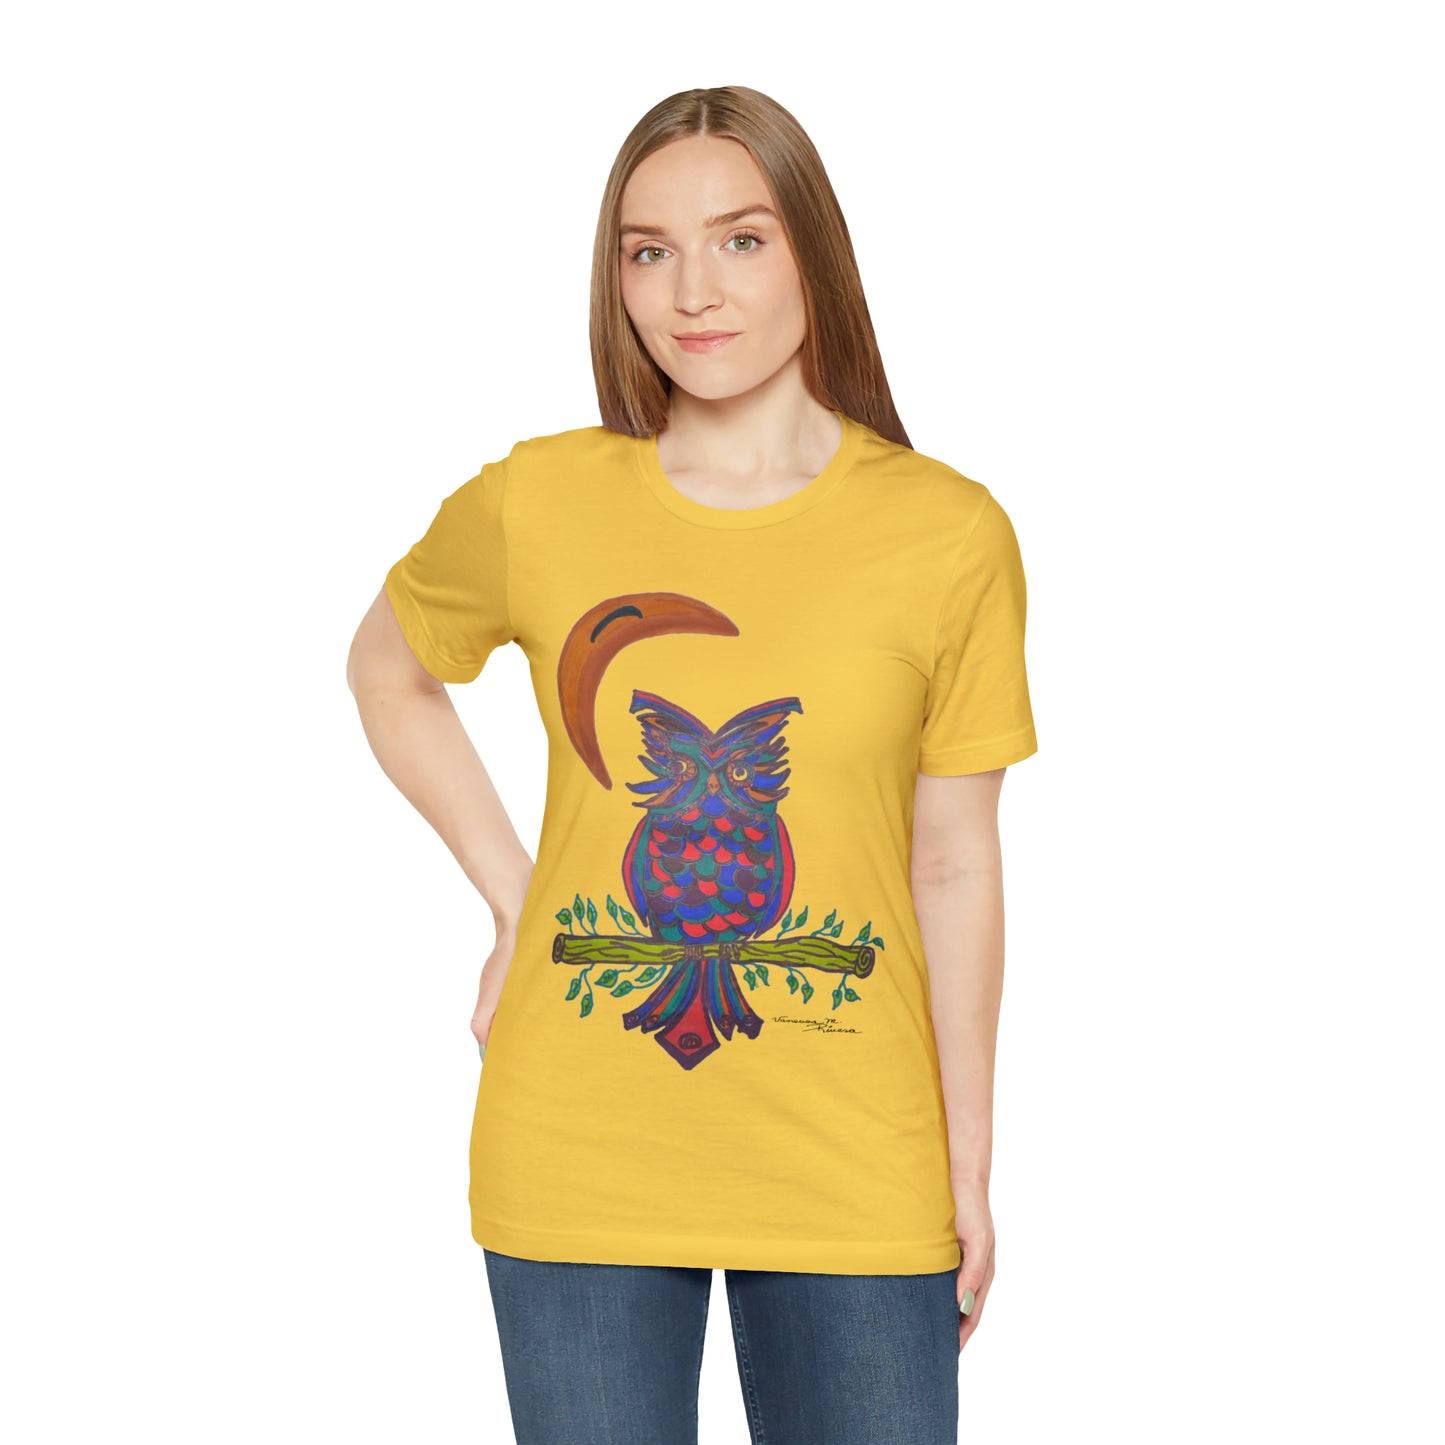 Owl - Unisex Jersey Short Sleeve Tee